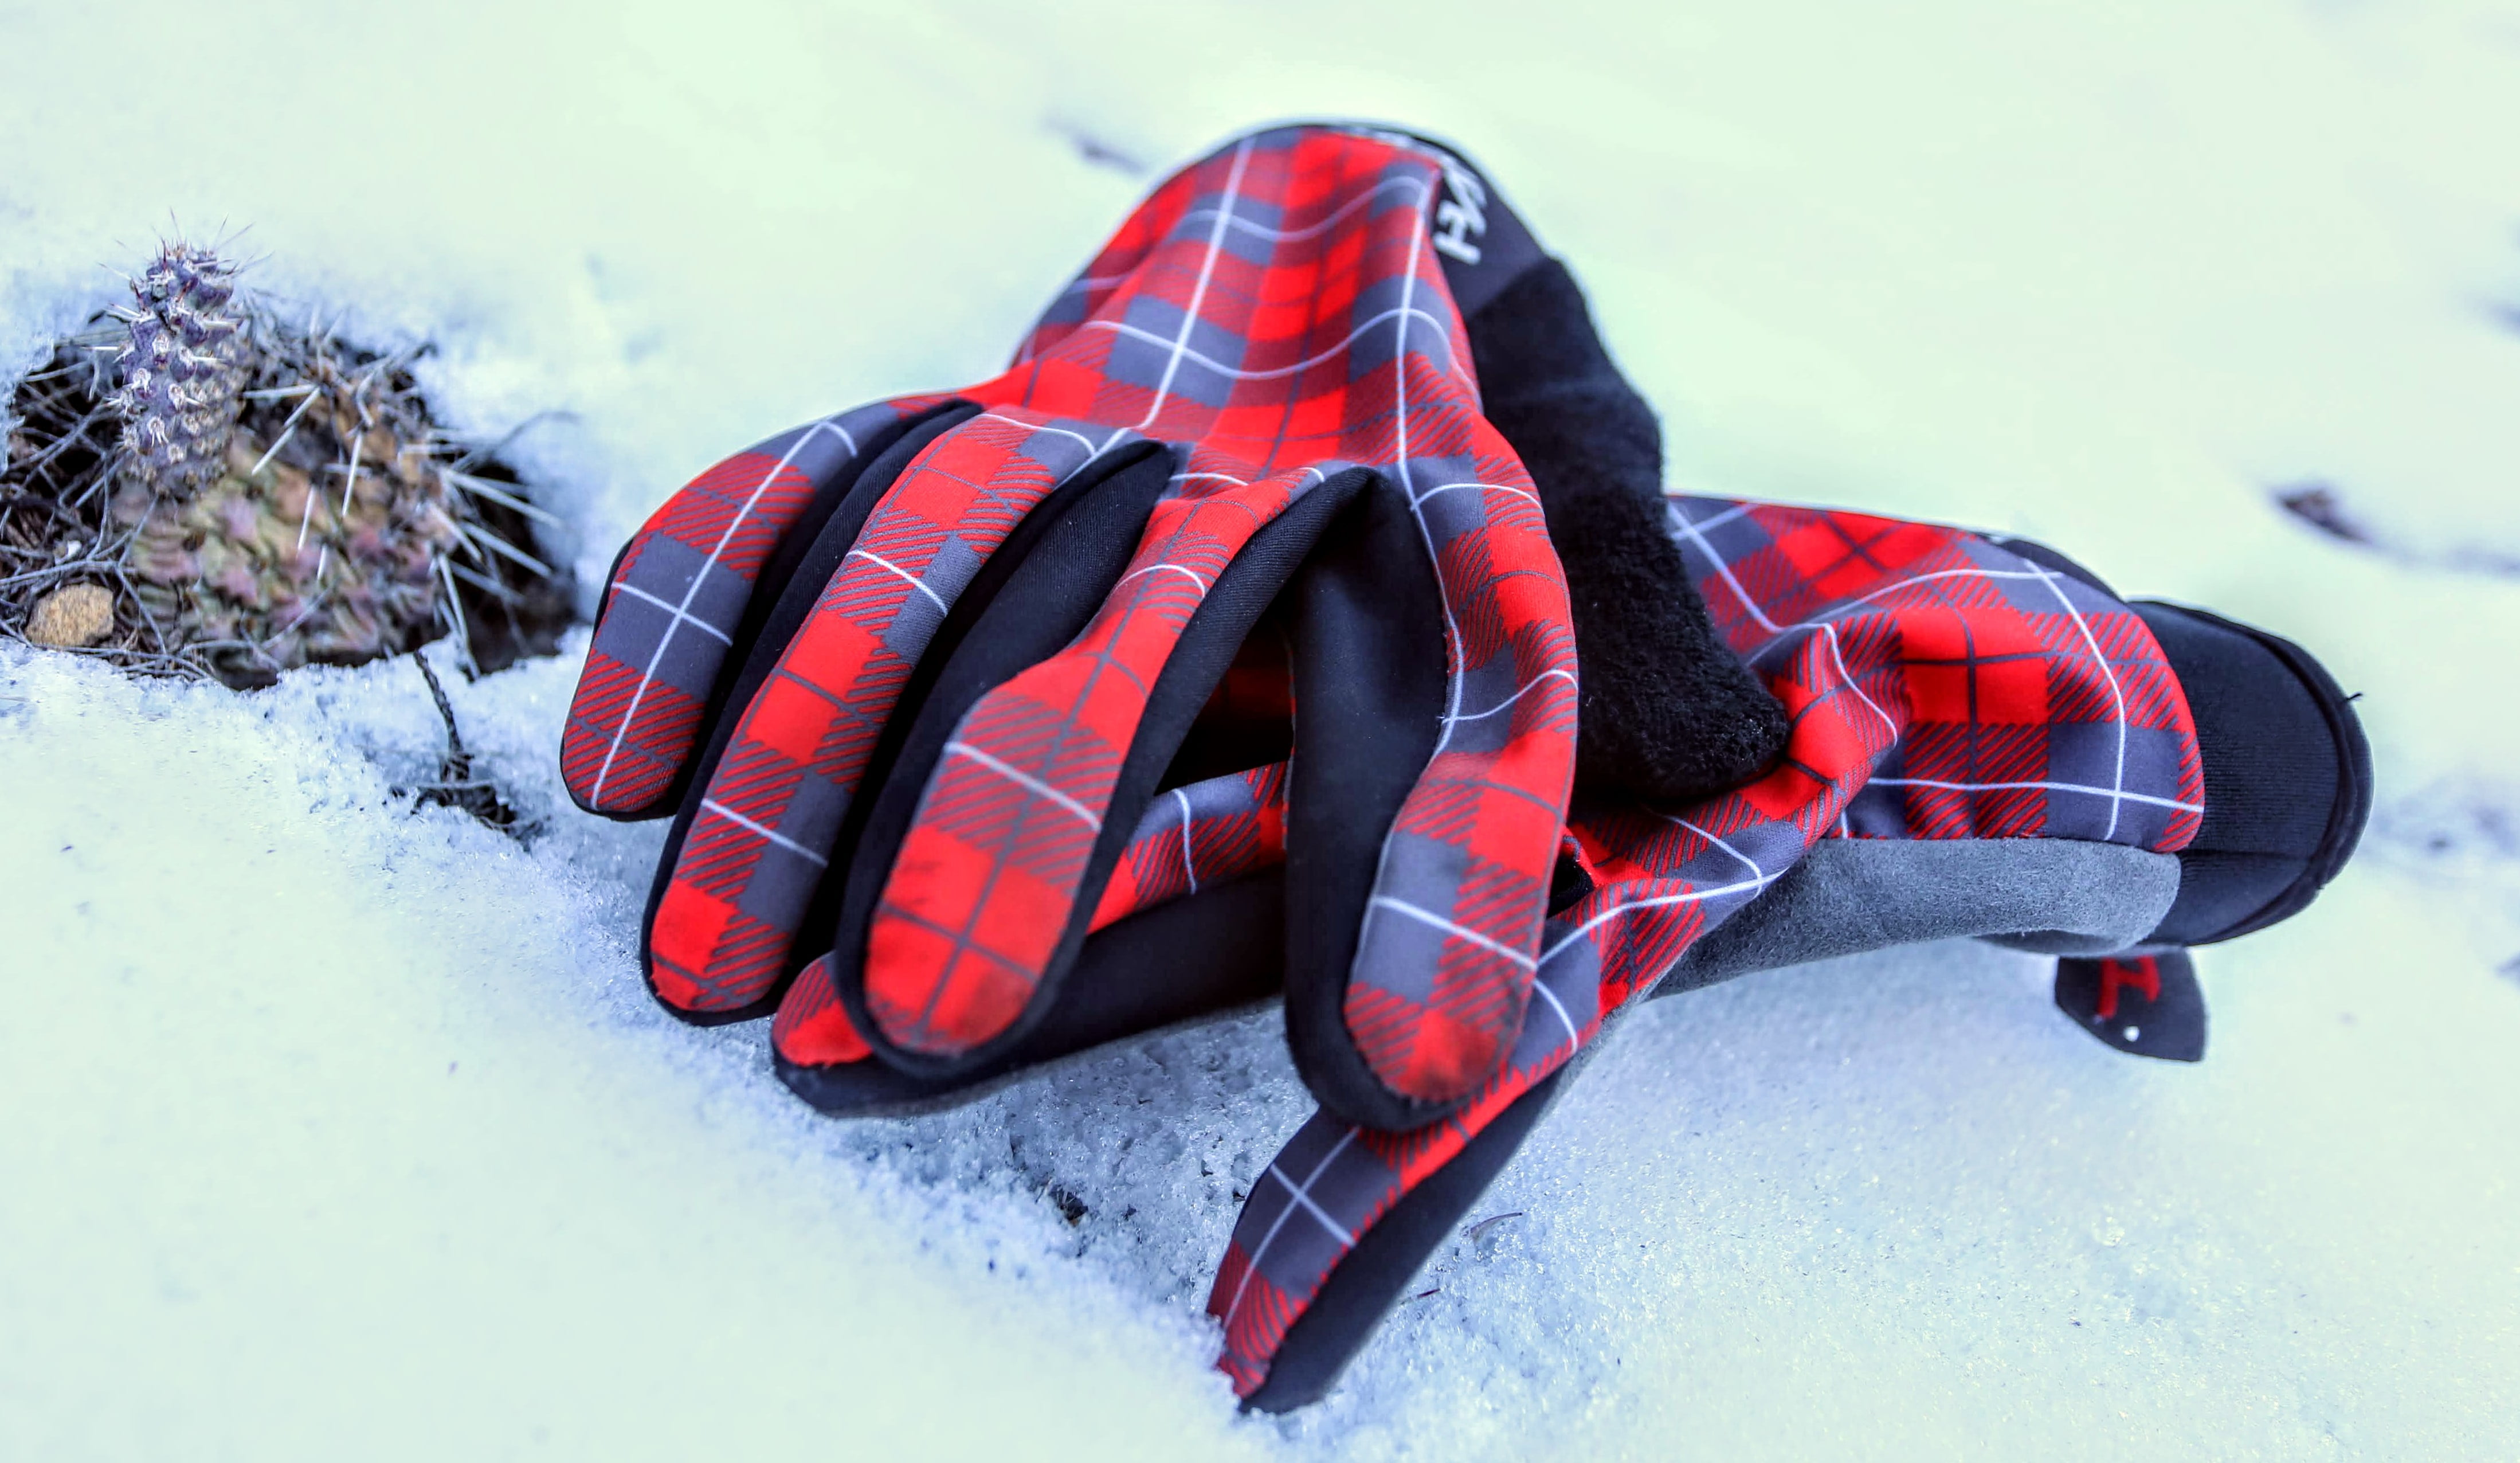 Handup Winter Glove Review